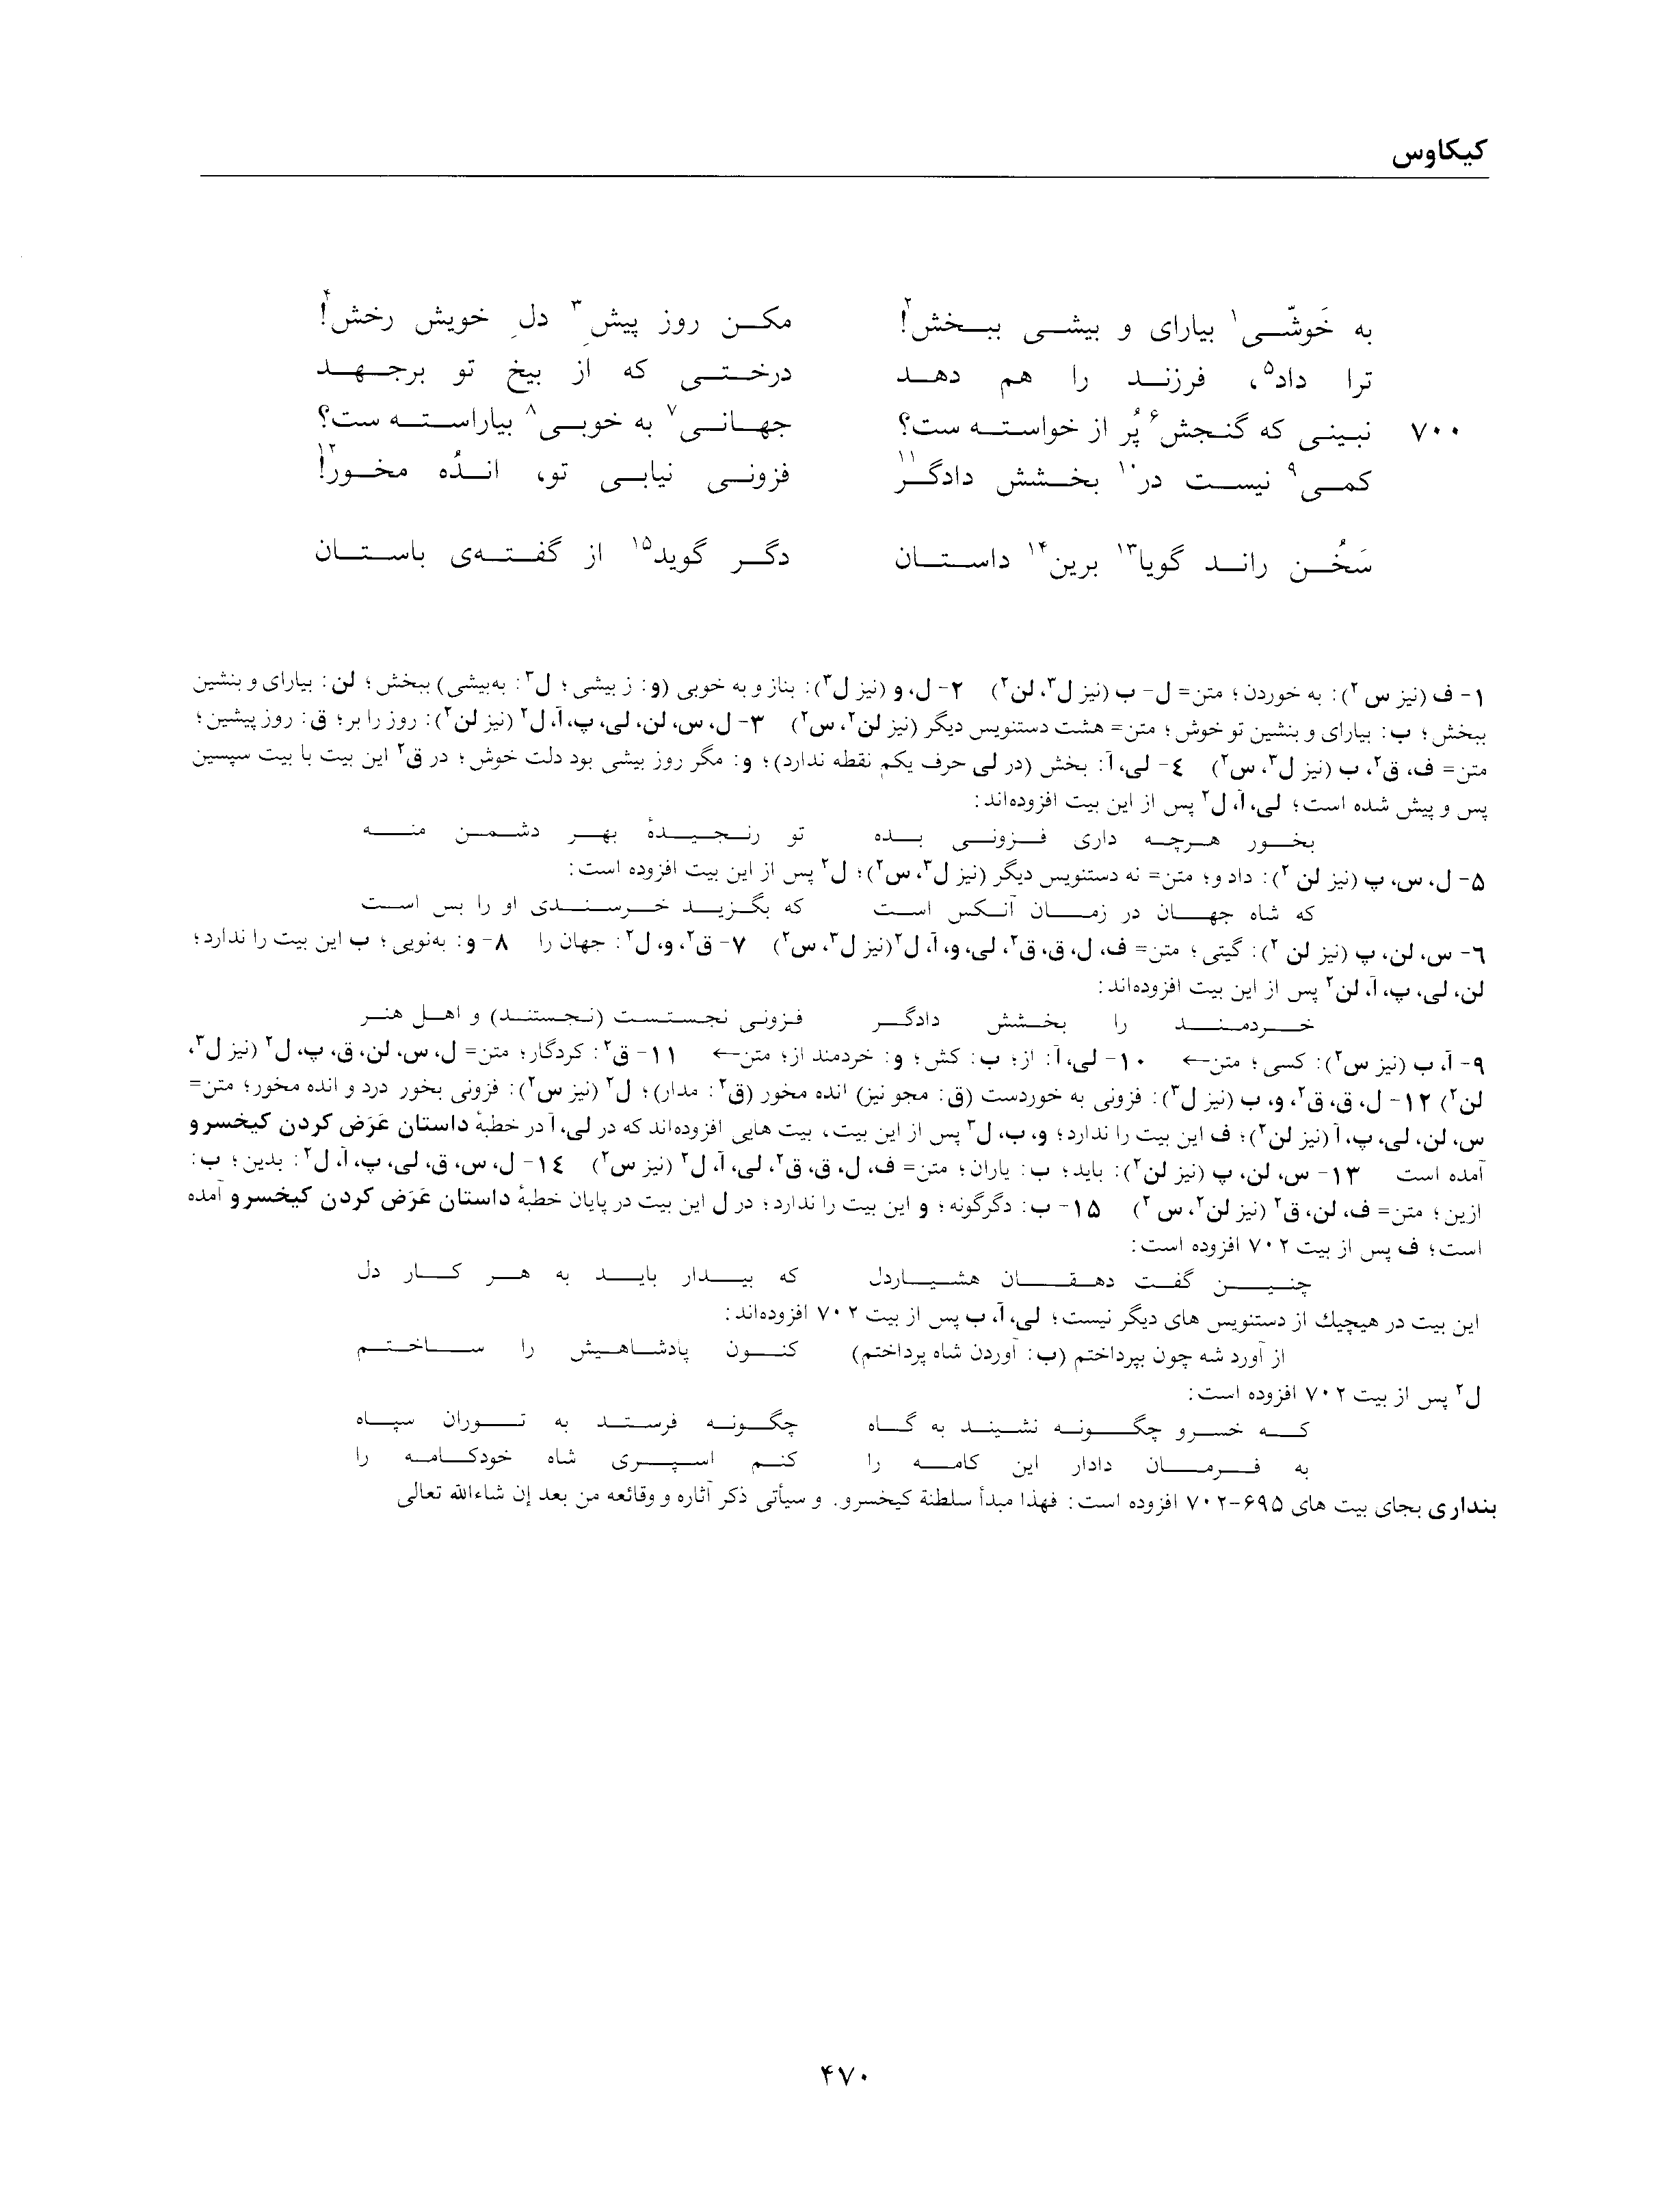 vol. 2, p. 470